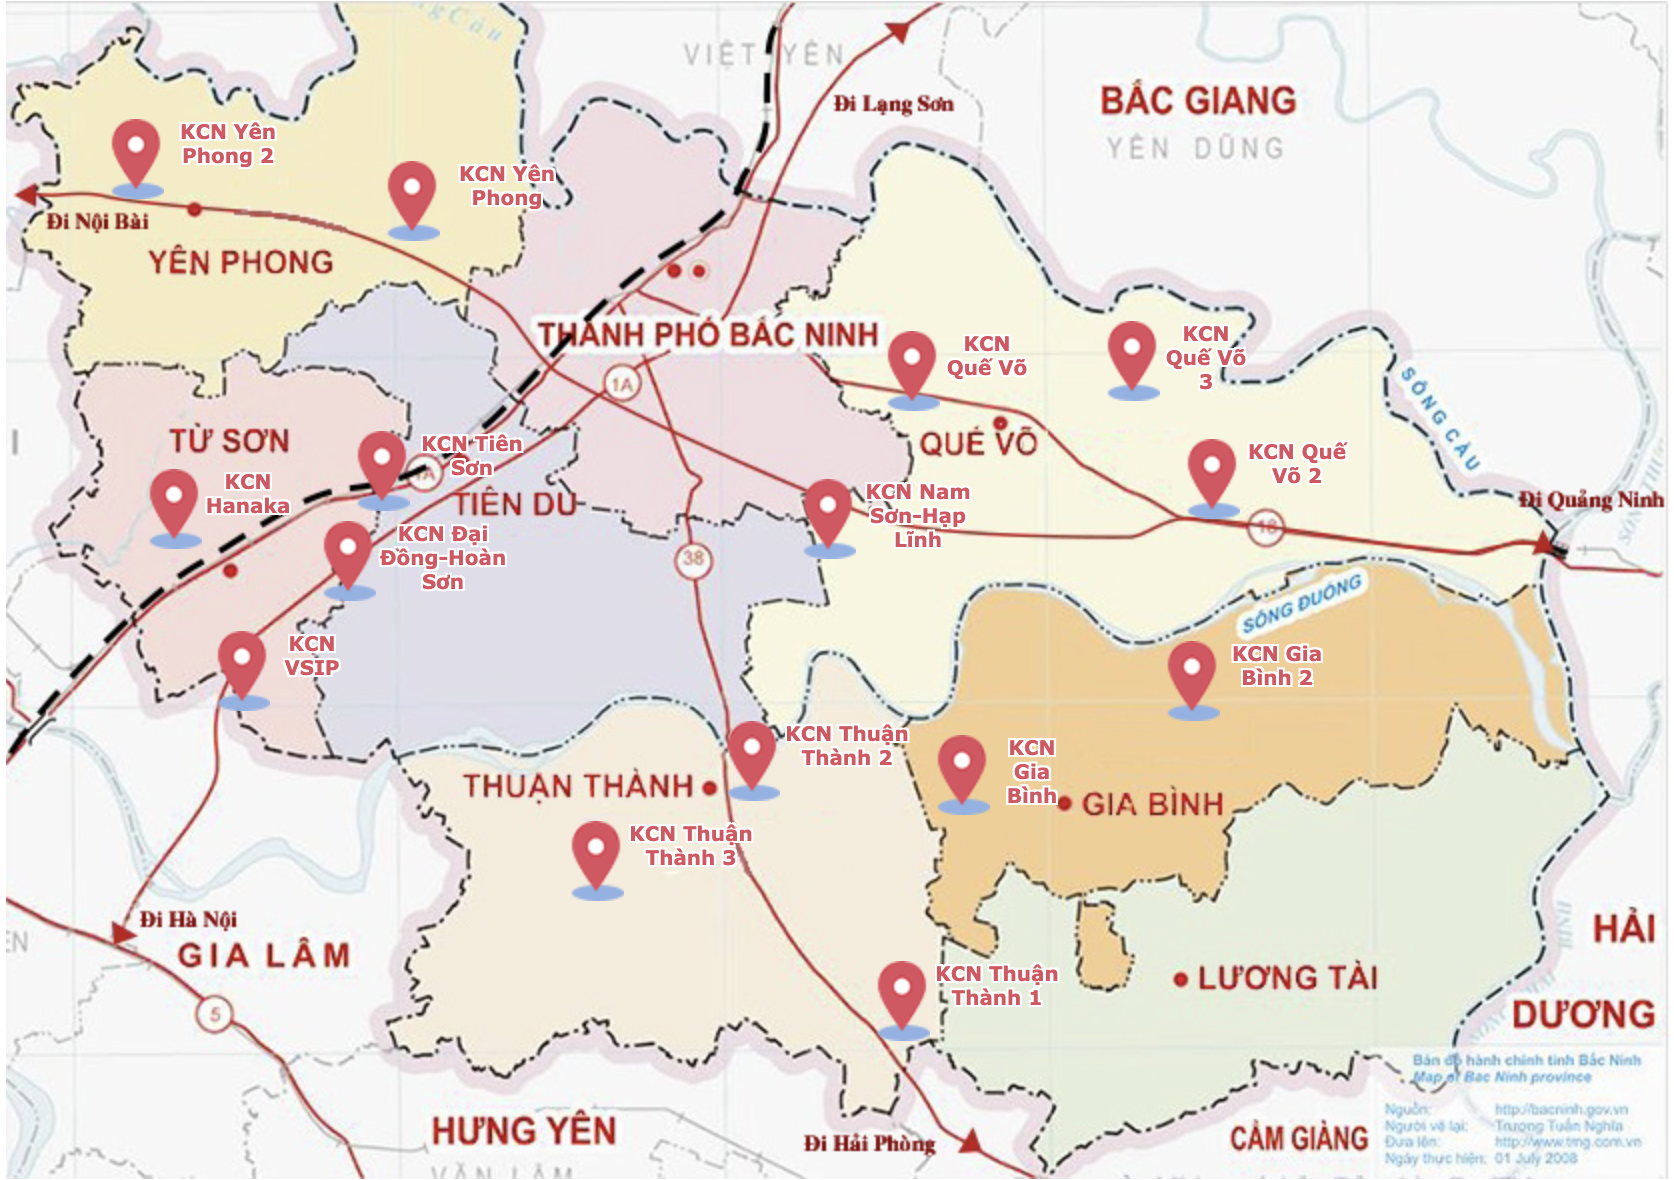 Hơn 1 tỷ USD chảy vào các khu công nghiệp ở Bắc Ninh trong 9 tháng